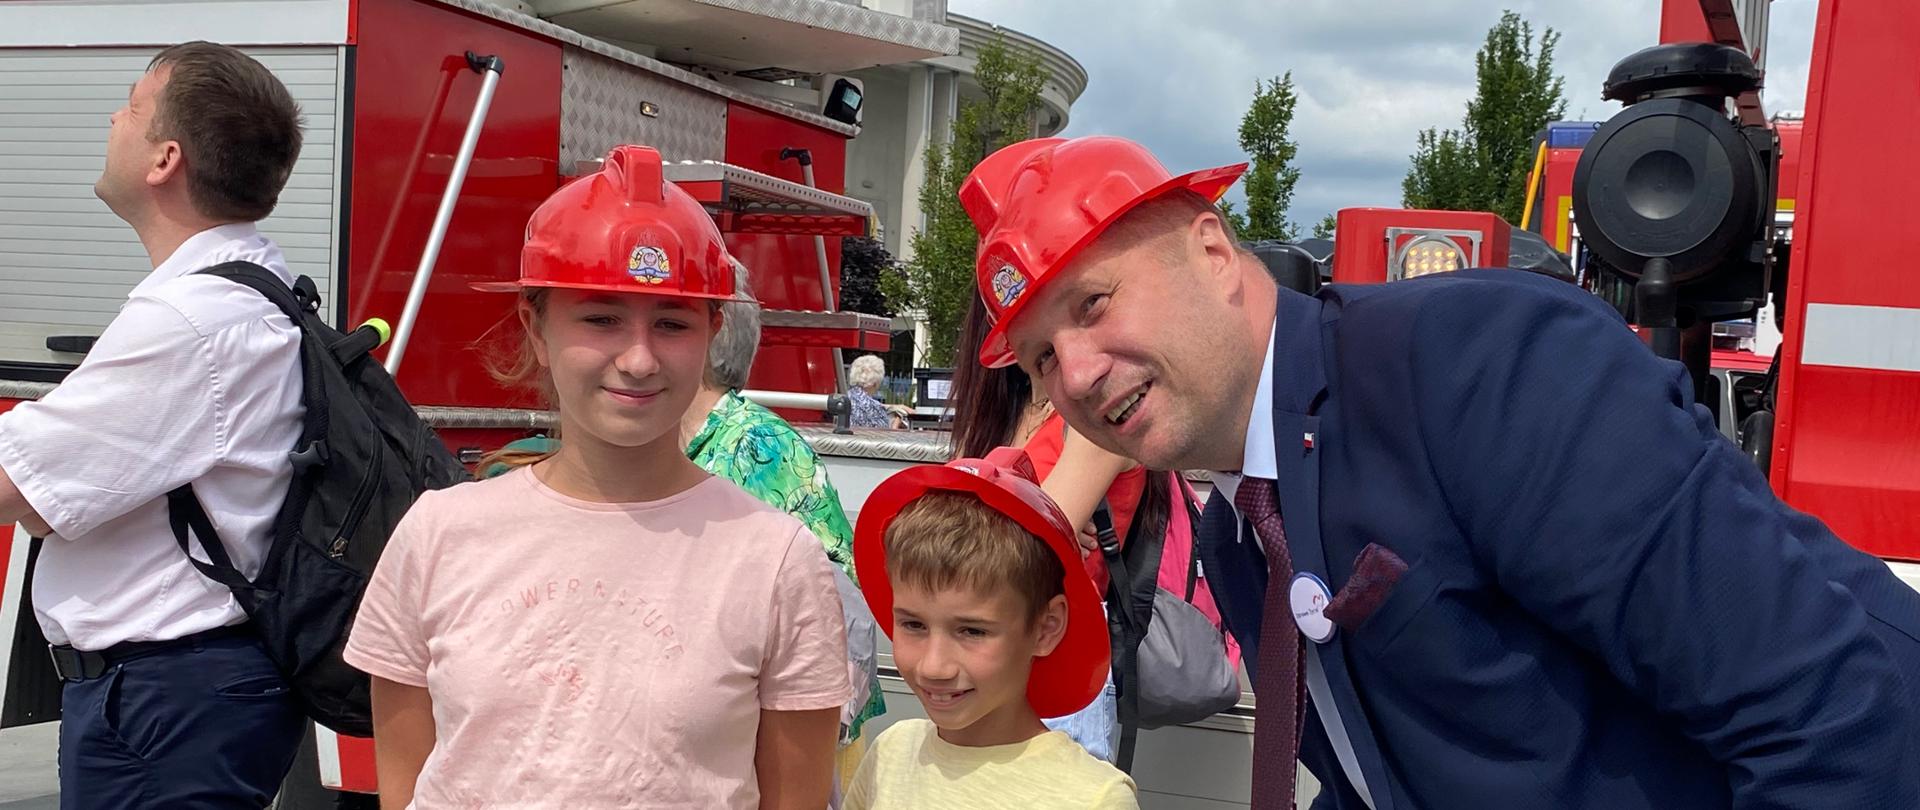 Minister robi sobie zdjęcie z uczestnikami festynu,. To dwoje dzieci. Wszyscy mają na głowach hełmy strażackie. W tle pojazdy pożarnicze.